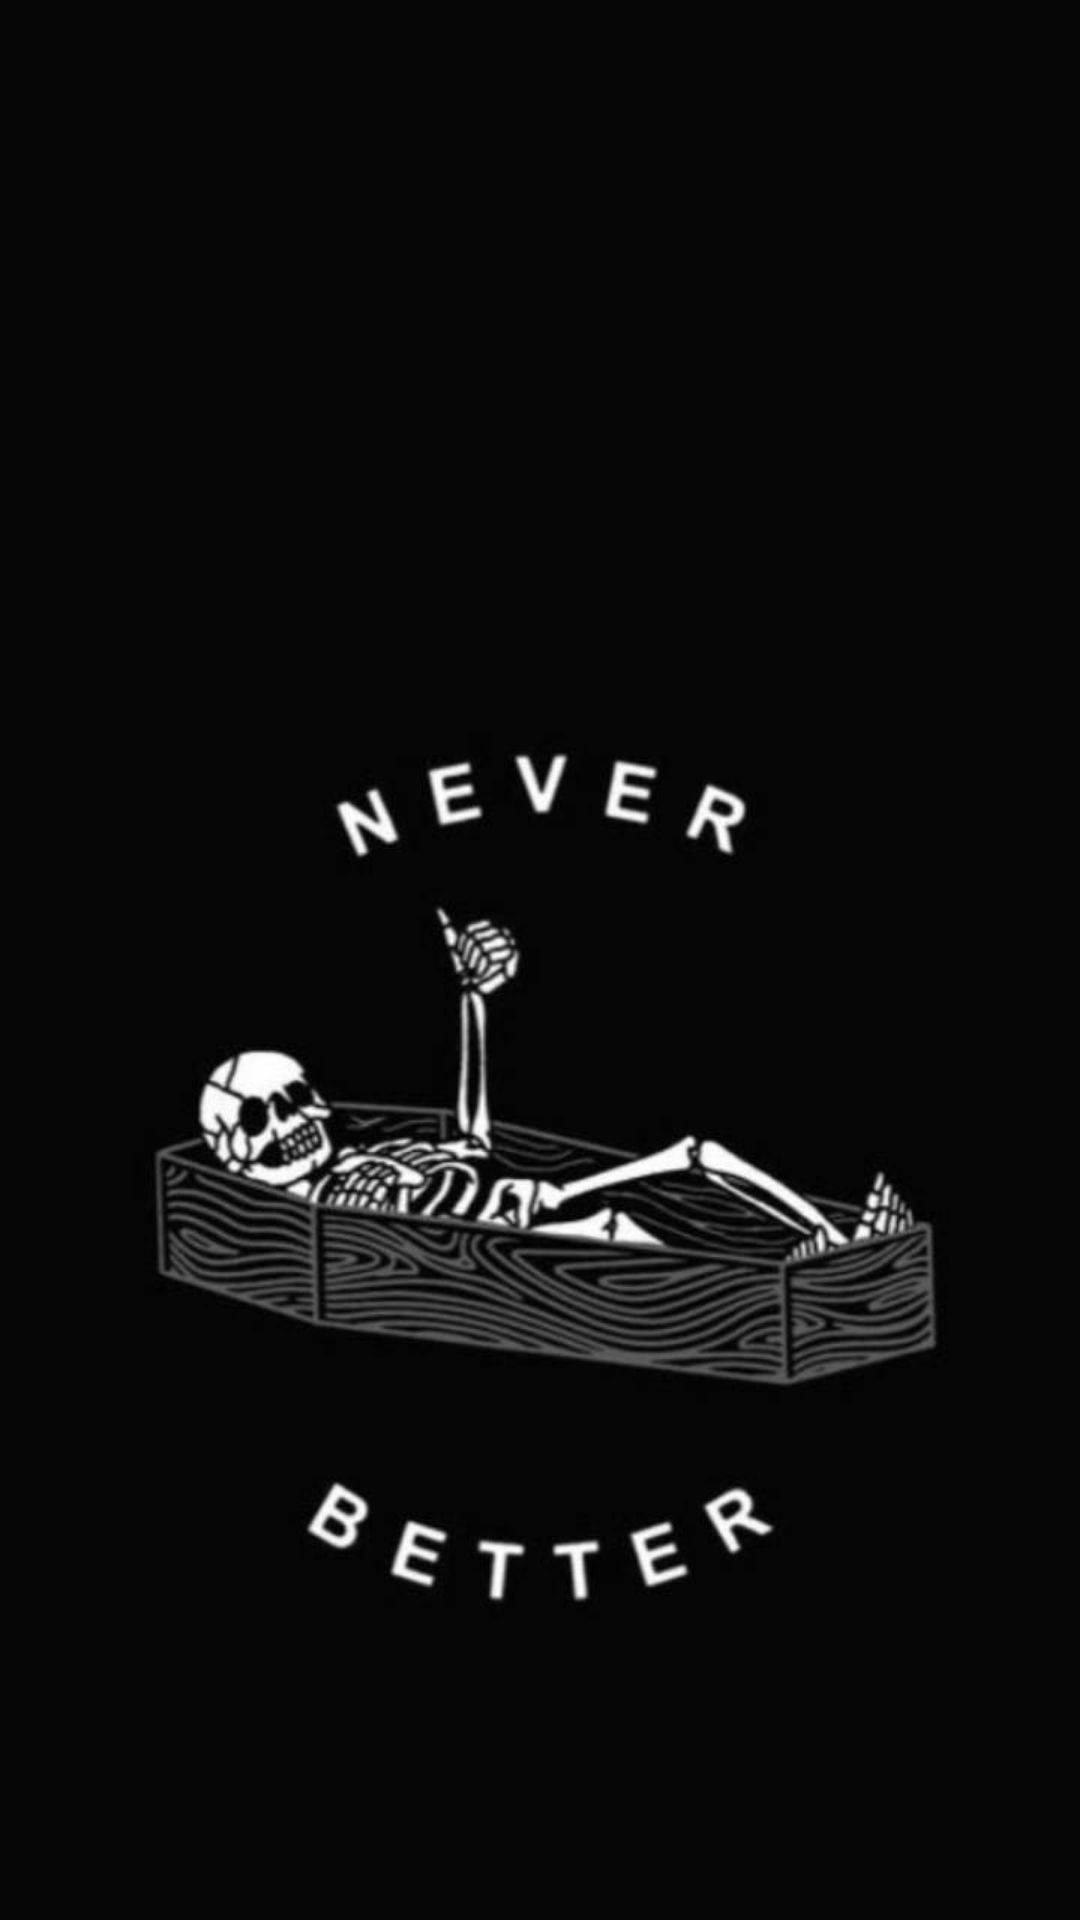 Skeleton Meme Coffin Wallpaper